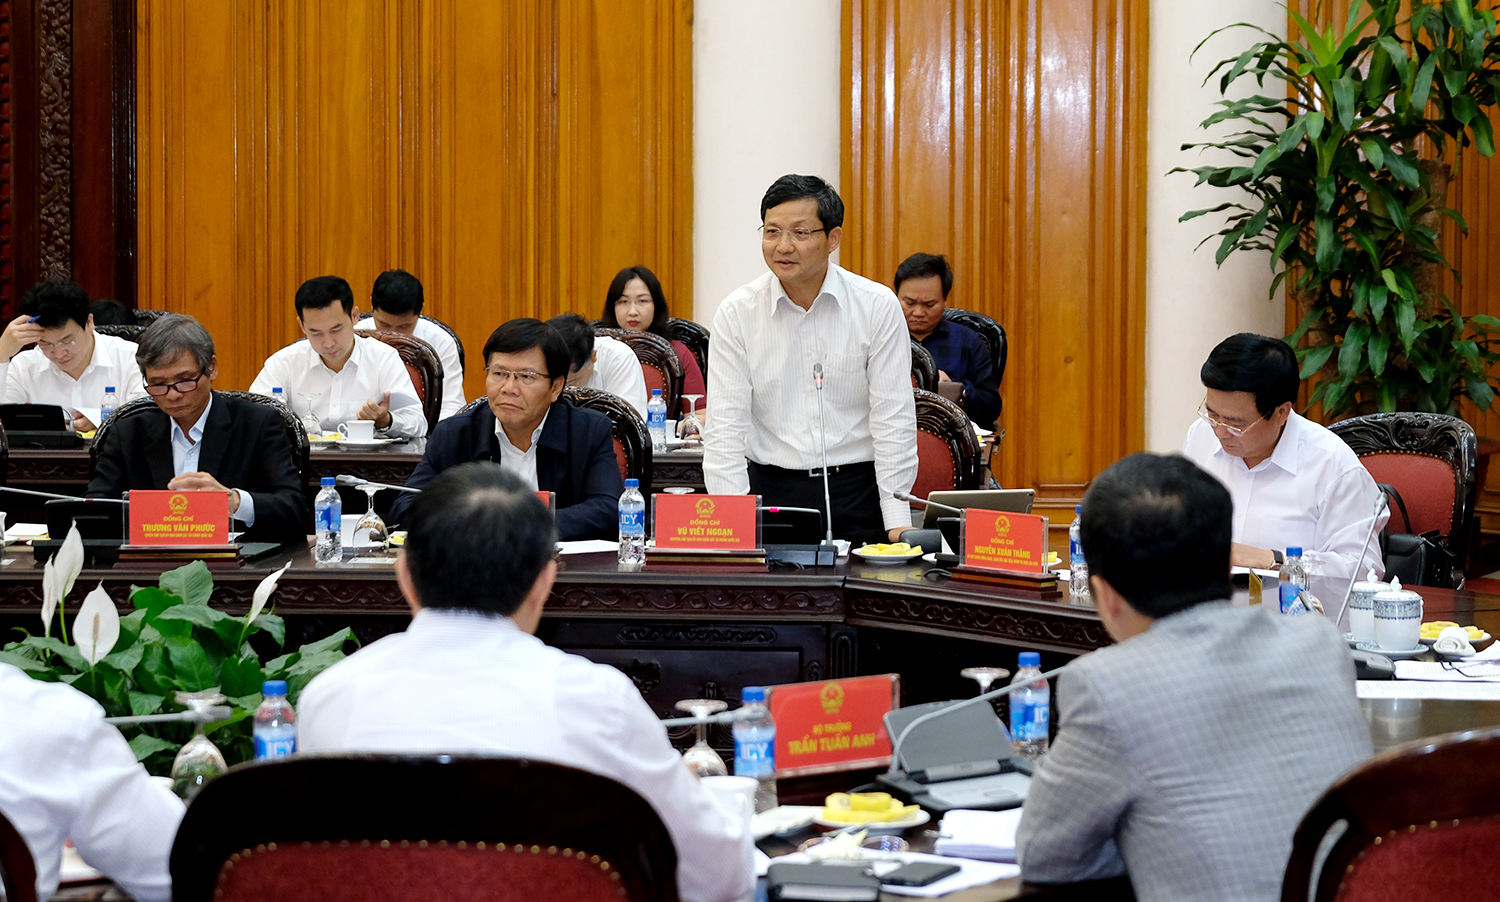 TS. Vũ Viết Ngoạn, Tổ trưởng Tổ tư vấn kinh tế của Thủ tướng trình bày báo cáo tại buổi làm việc, Ảnh: VGP/Quang Hiếu